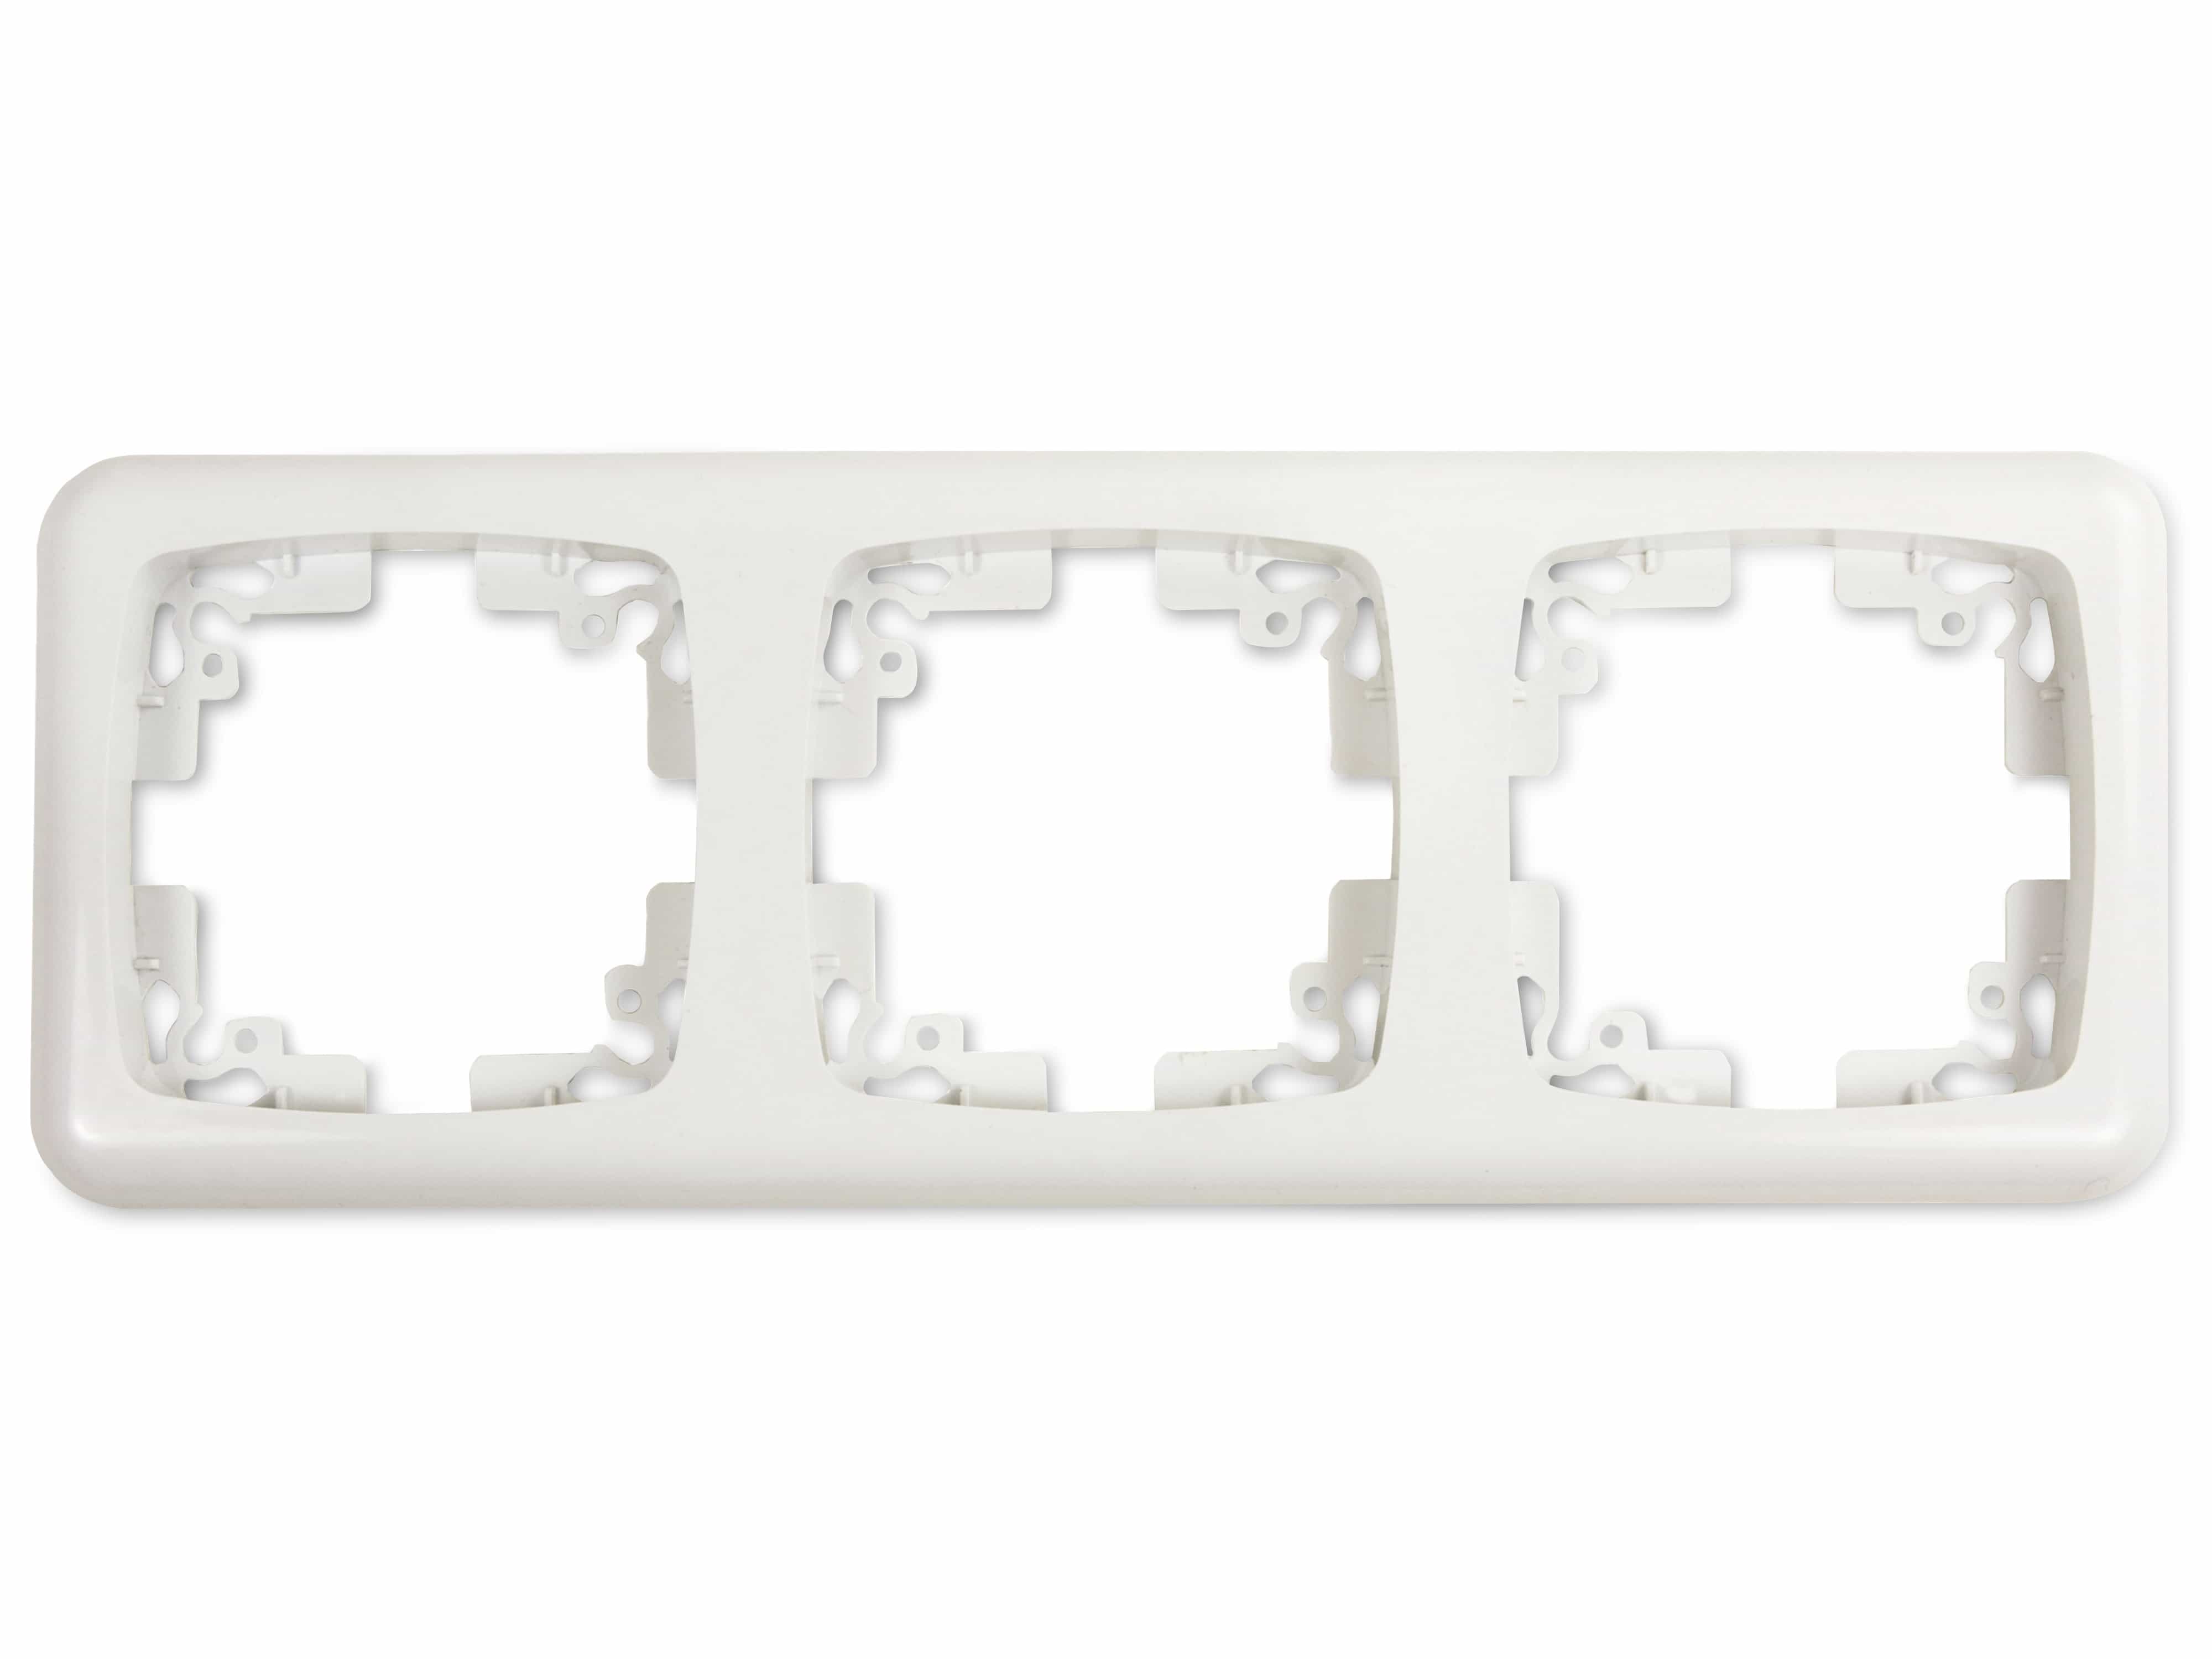 ARCAS ELEGANCE Schalter/Steckdosen-Rahmen, 3-fach, W13-Y003, weiß